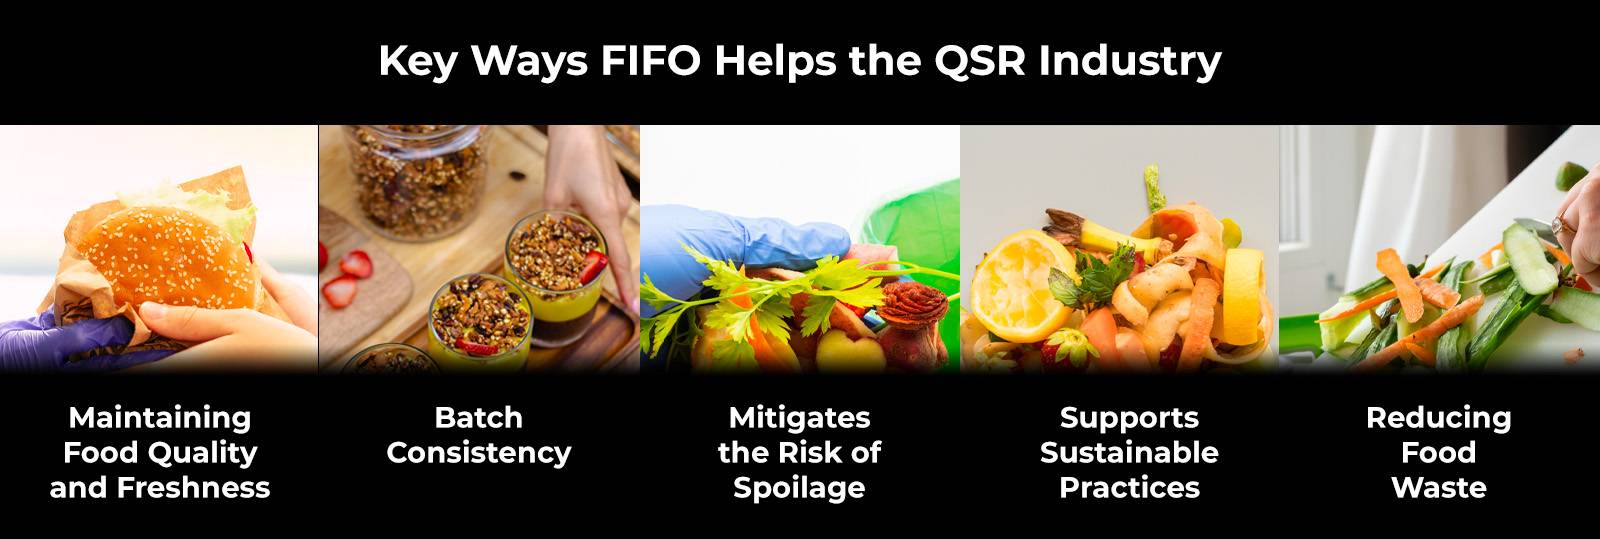 FIFO ช่วยอุตสาหกรรม QSR ในการส่งมอบไมล์สุดท้ายได้อย่างไร